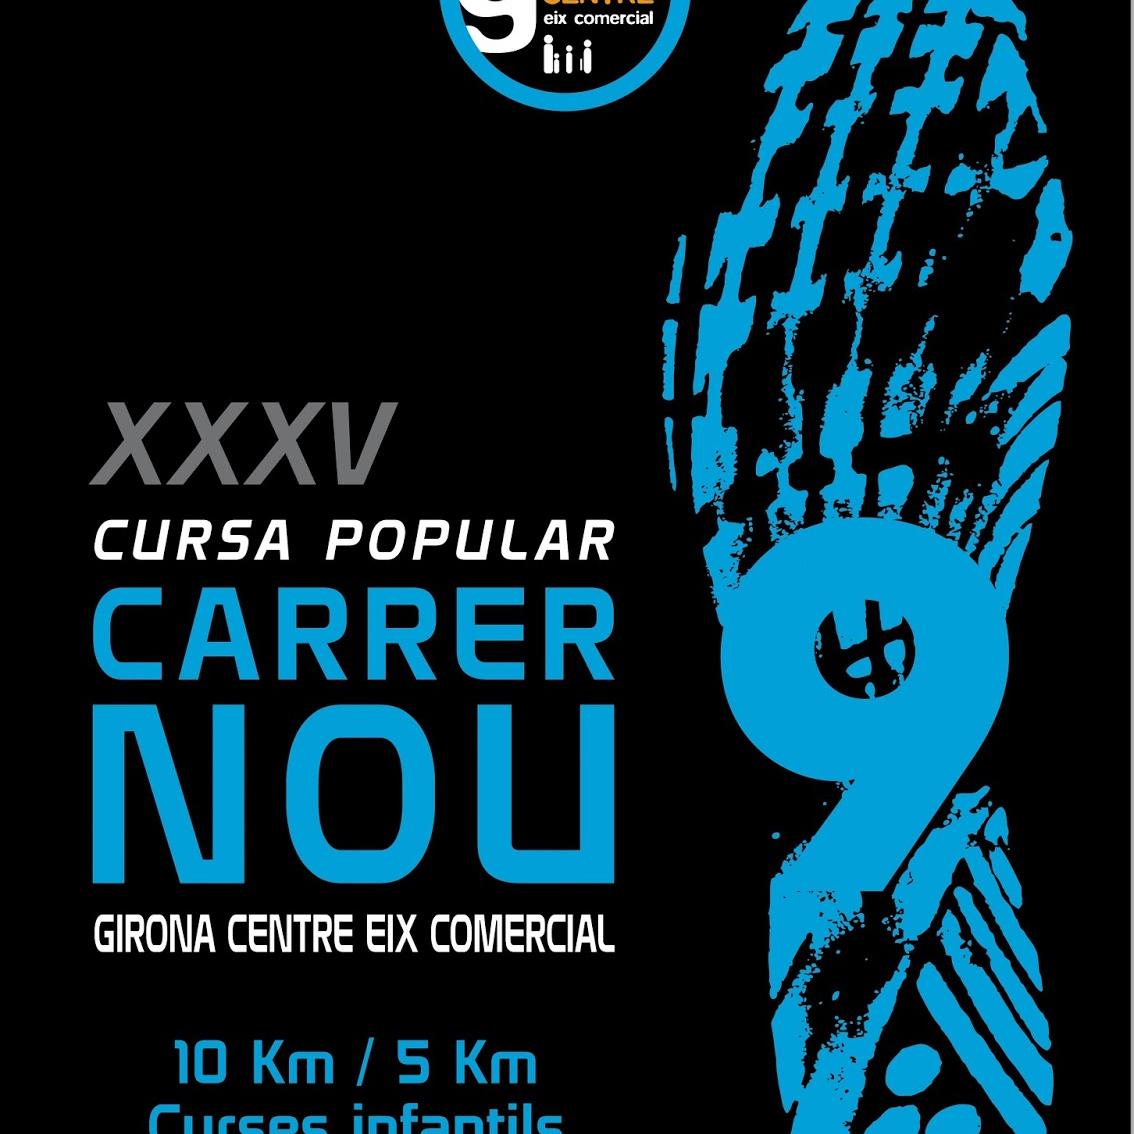 Aquest diumenge se celebrarà la 35a Cursa Popular del Carrer Nou, esperem superar els 2.200 corredors de l'any passat